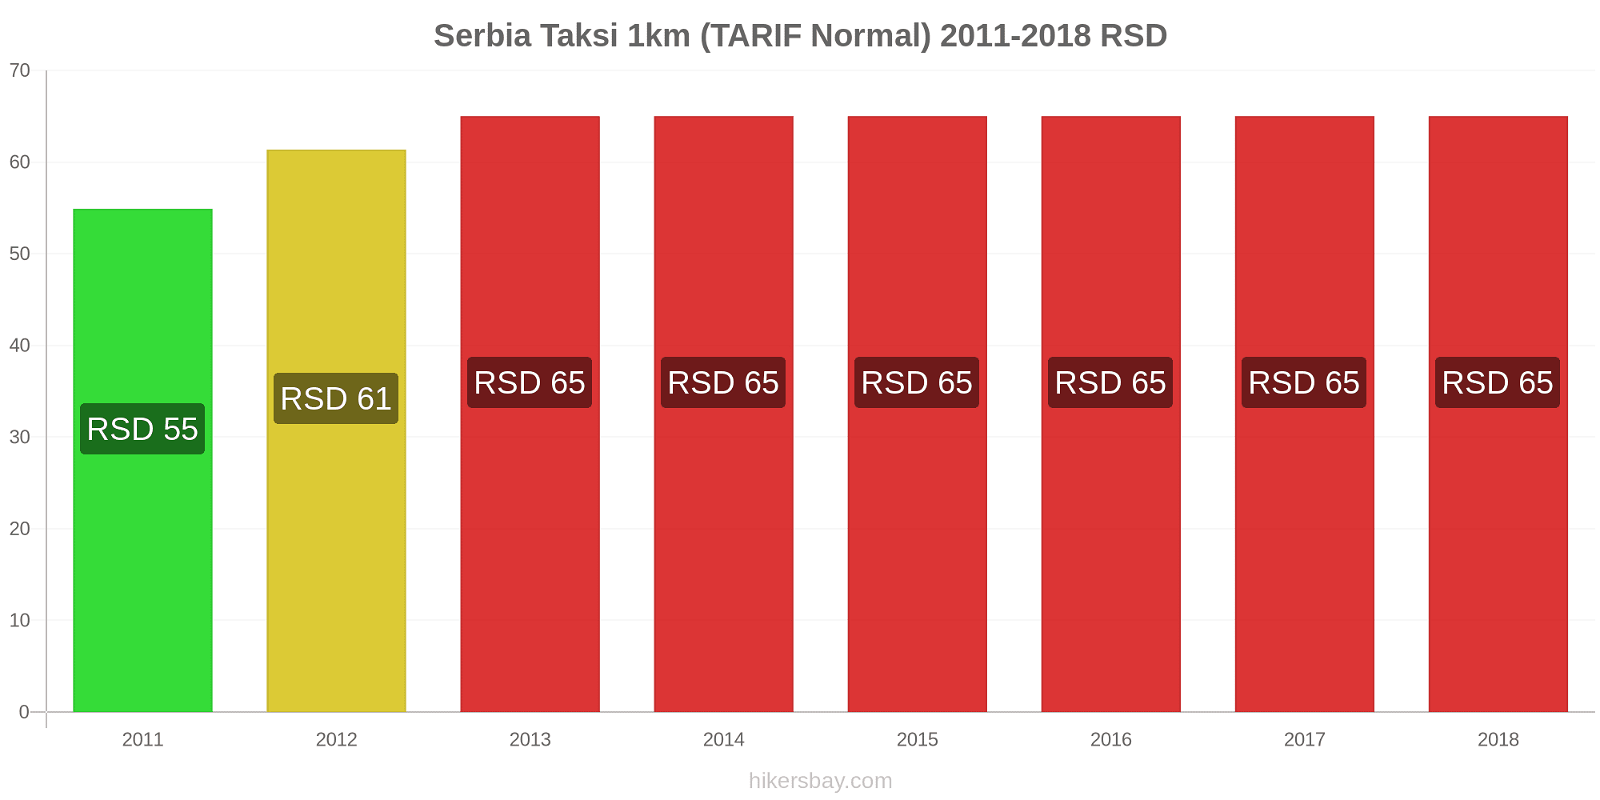 Serbia perubahan harga Taksi 1km (Tarif Normal) hikersbay.com